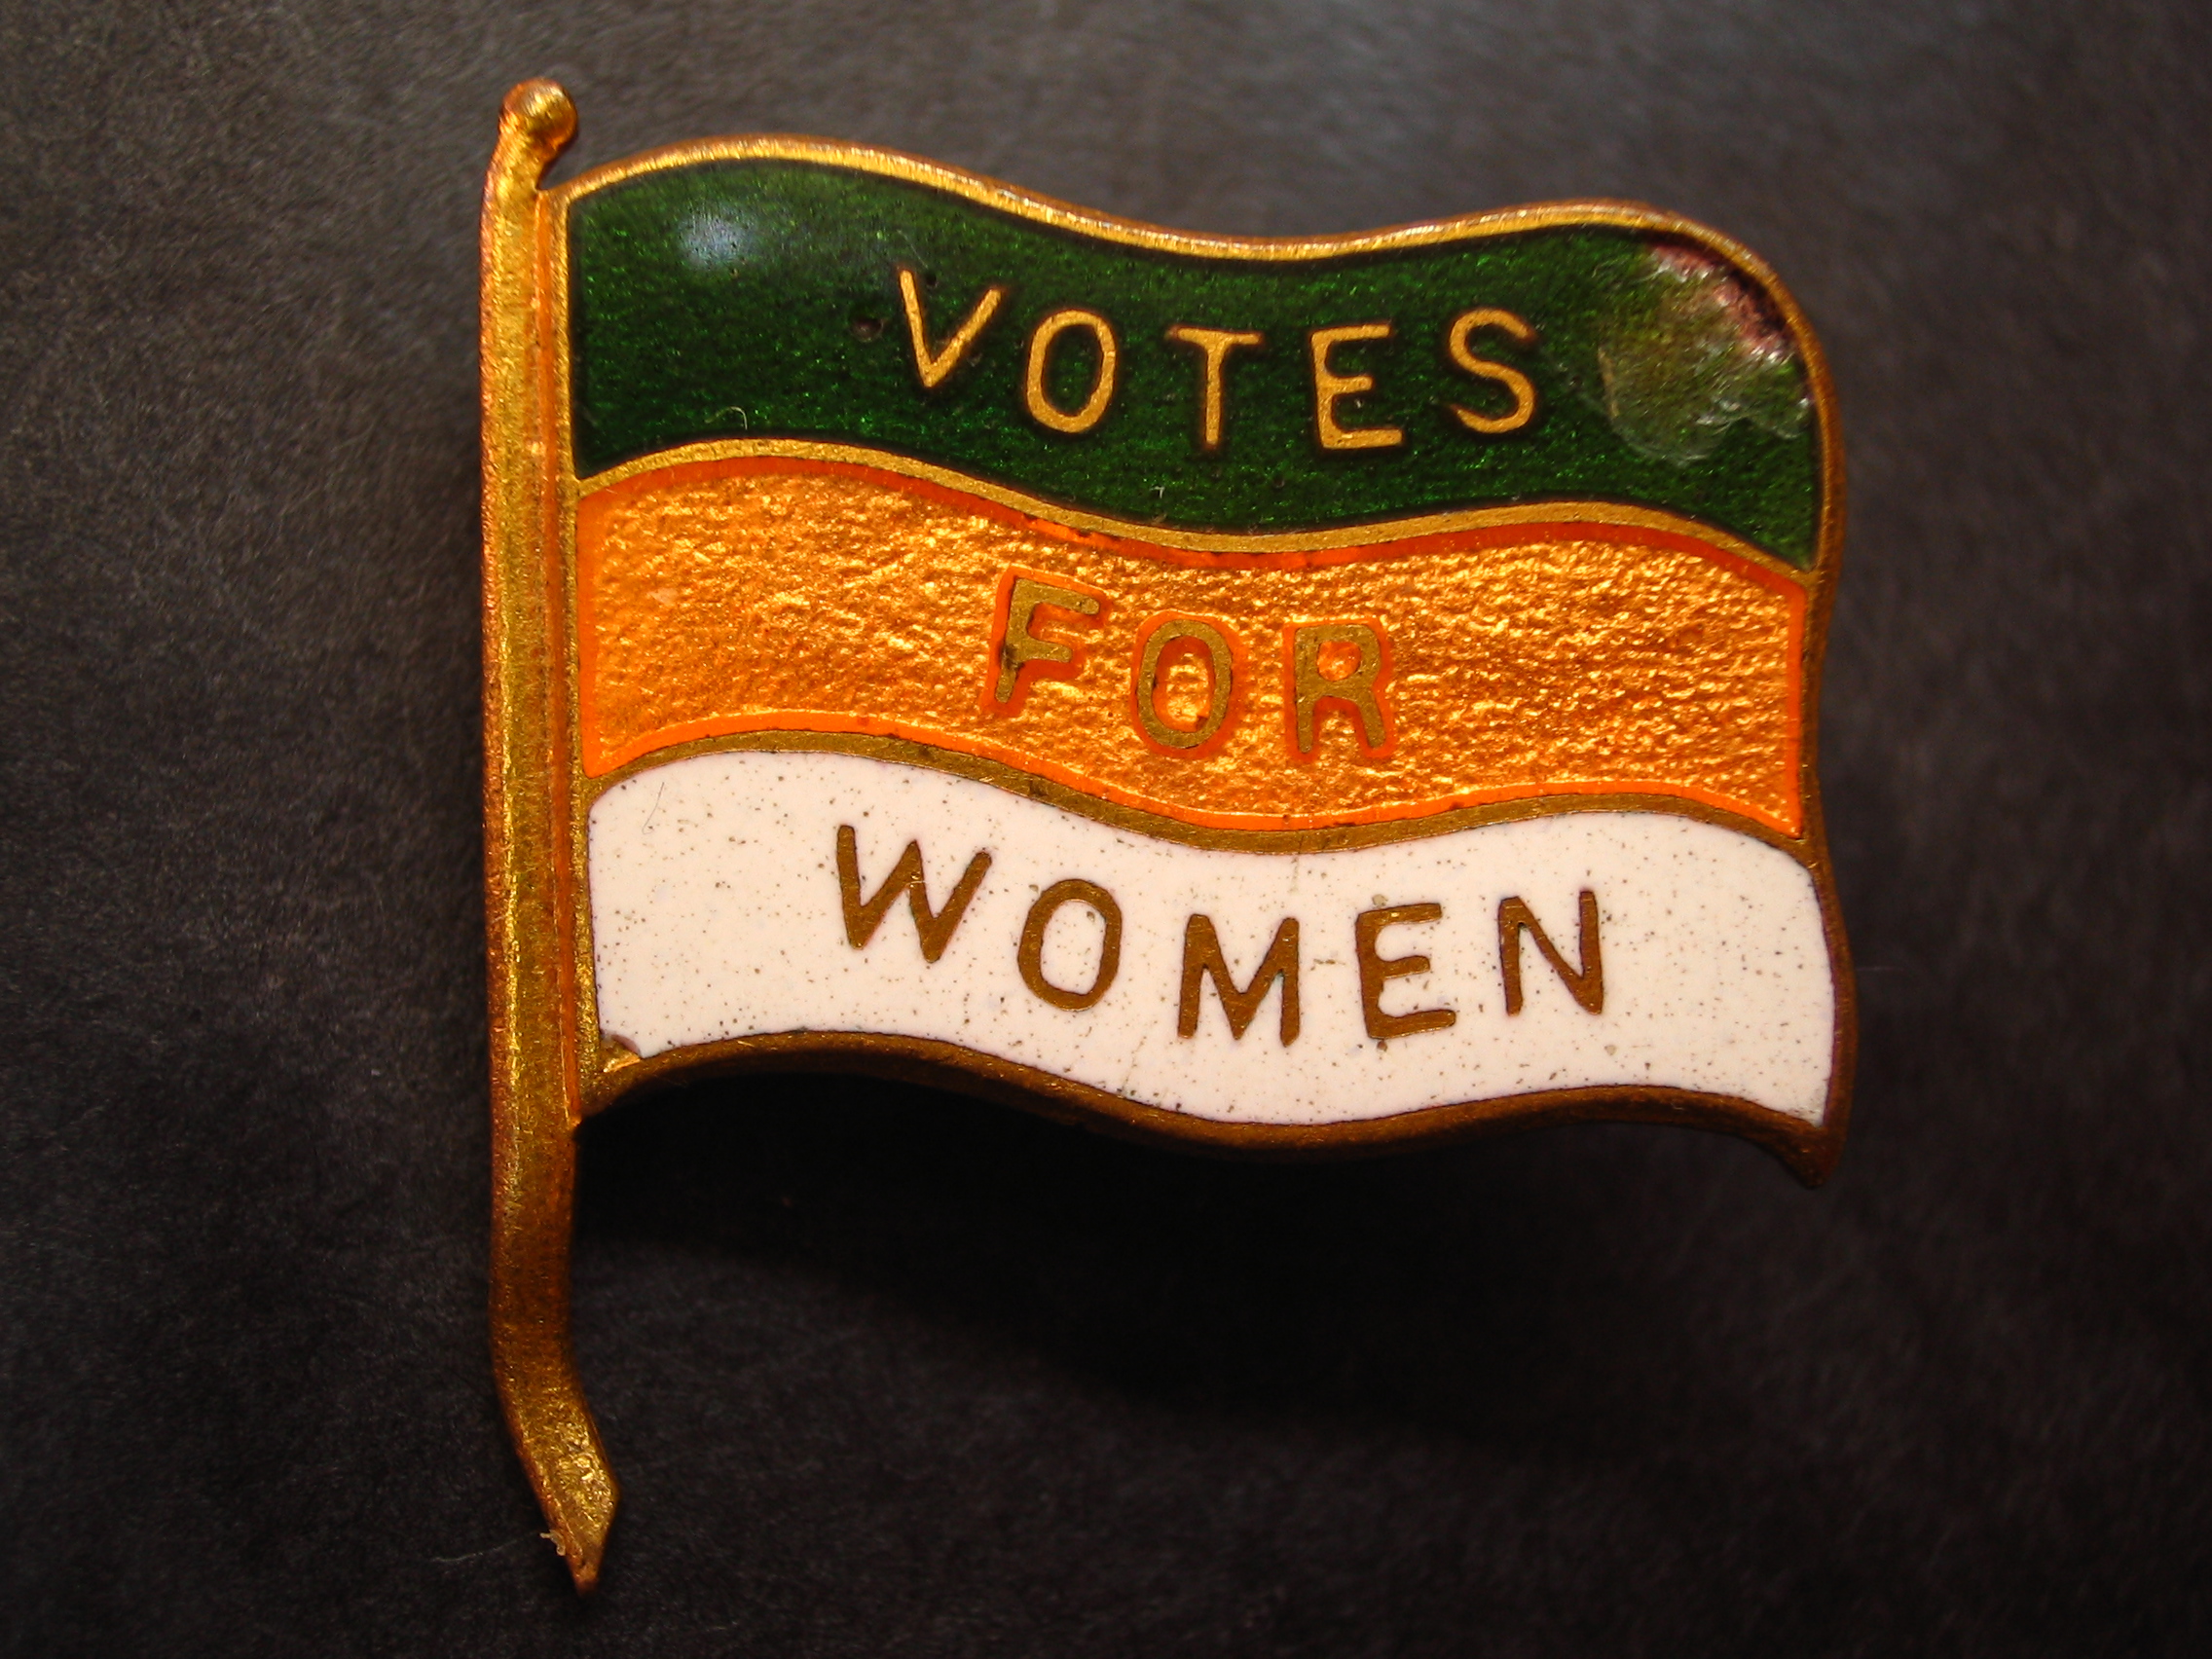 League of Women Voters - Wikipedia